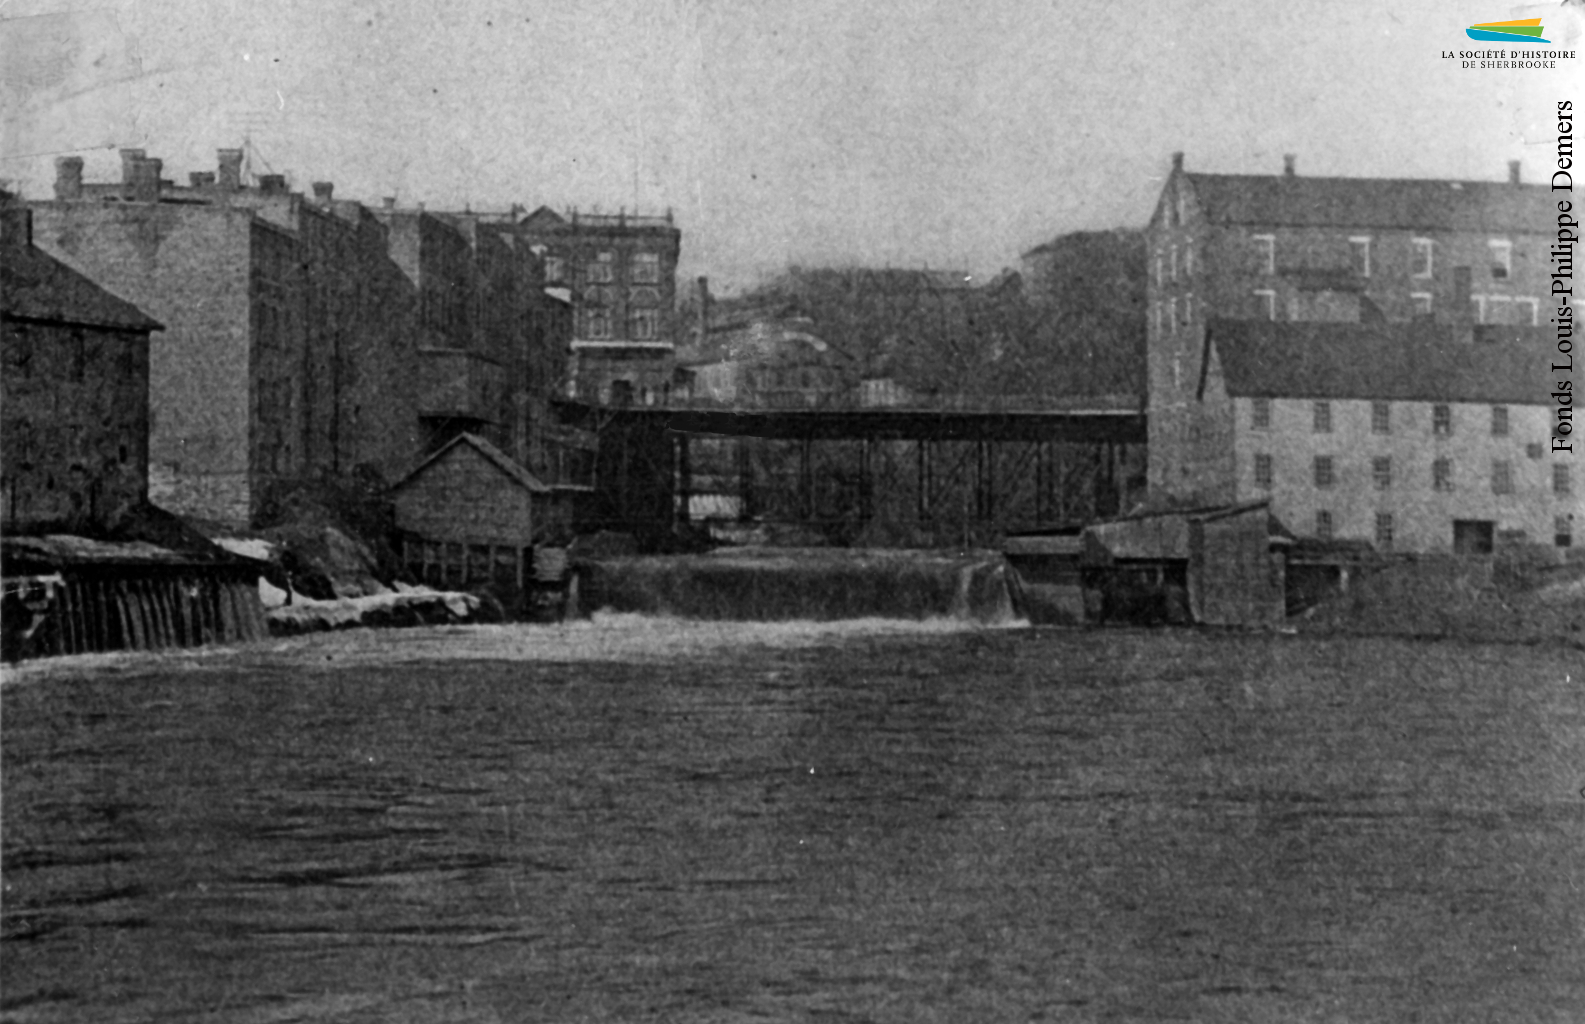 Le site du confluent vers 1898, avec le pont Gilbert-Hyatt et la rue Dufferin. L’usine Sherbrooke Iron Works est située dans le bâtiment blanc à l’avant-plan à droite. Elle y reste jusqu’en 1912.